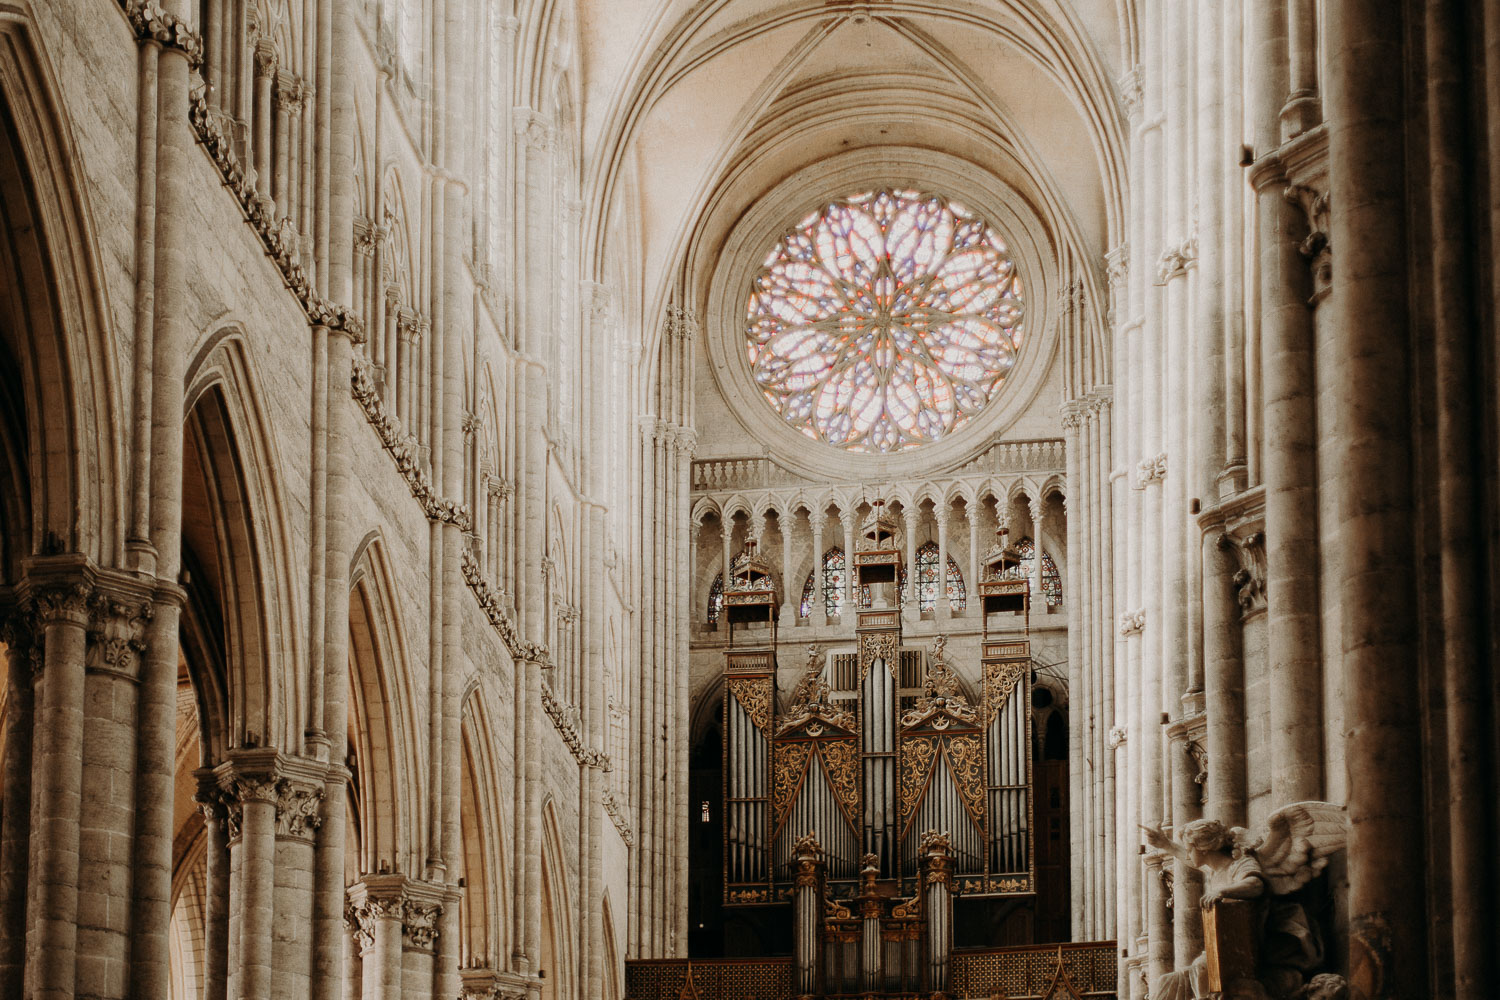 Photographe mariage cathédrale Amiens